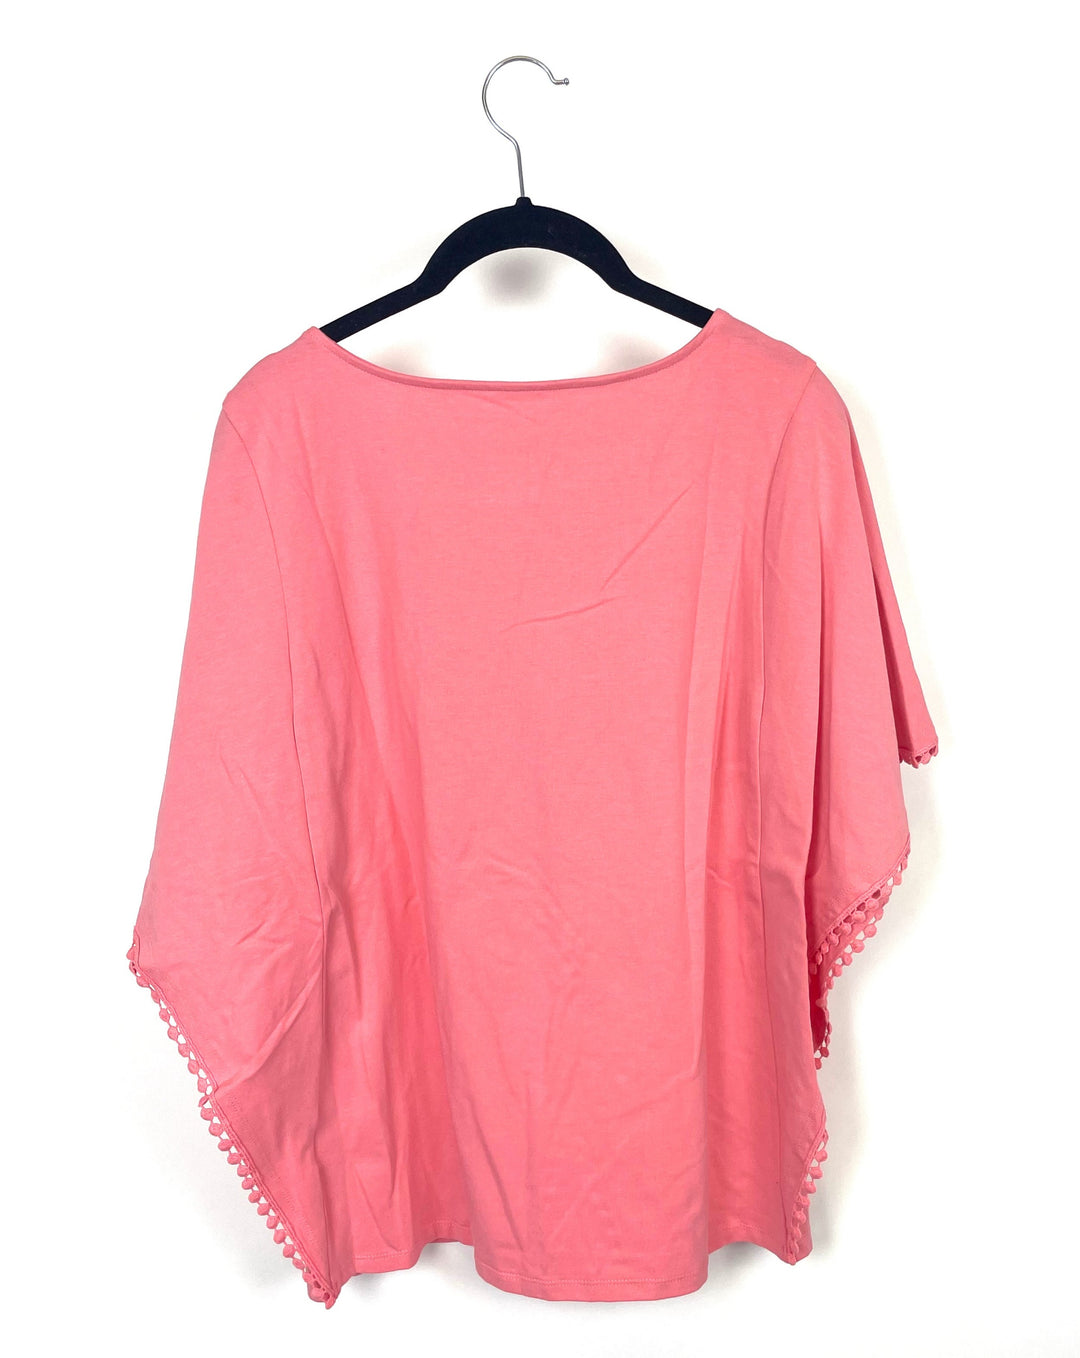 Coral Short Sleeve Winged Shirt - Small/Medium, Large/Extra Large